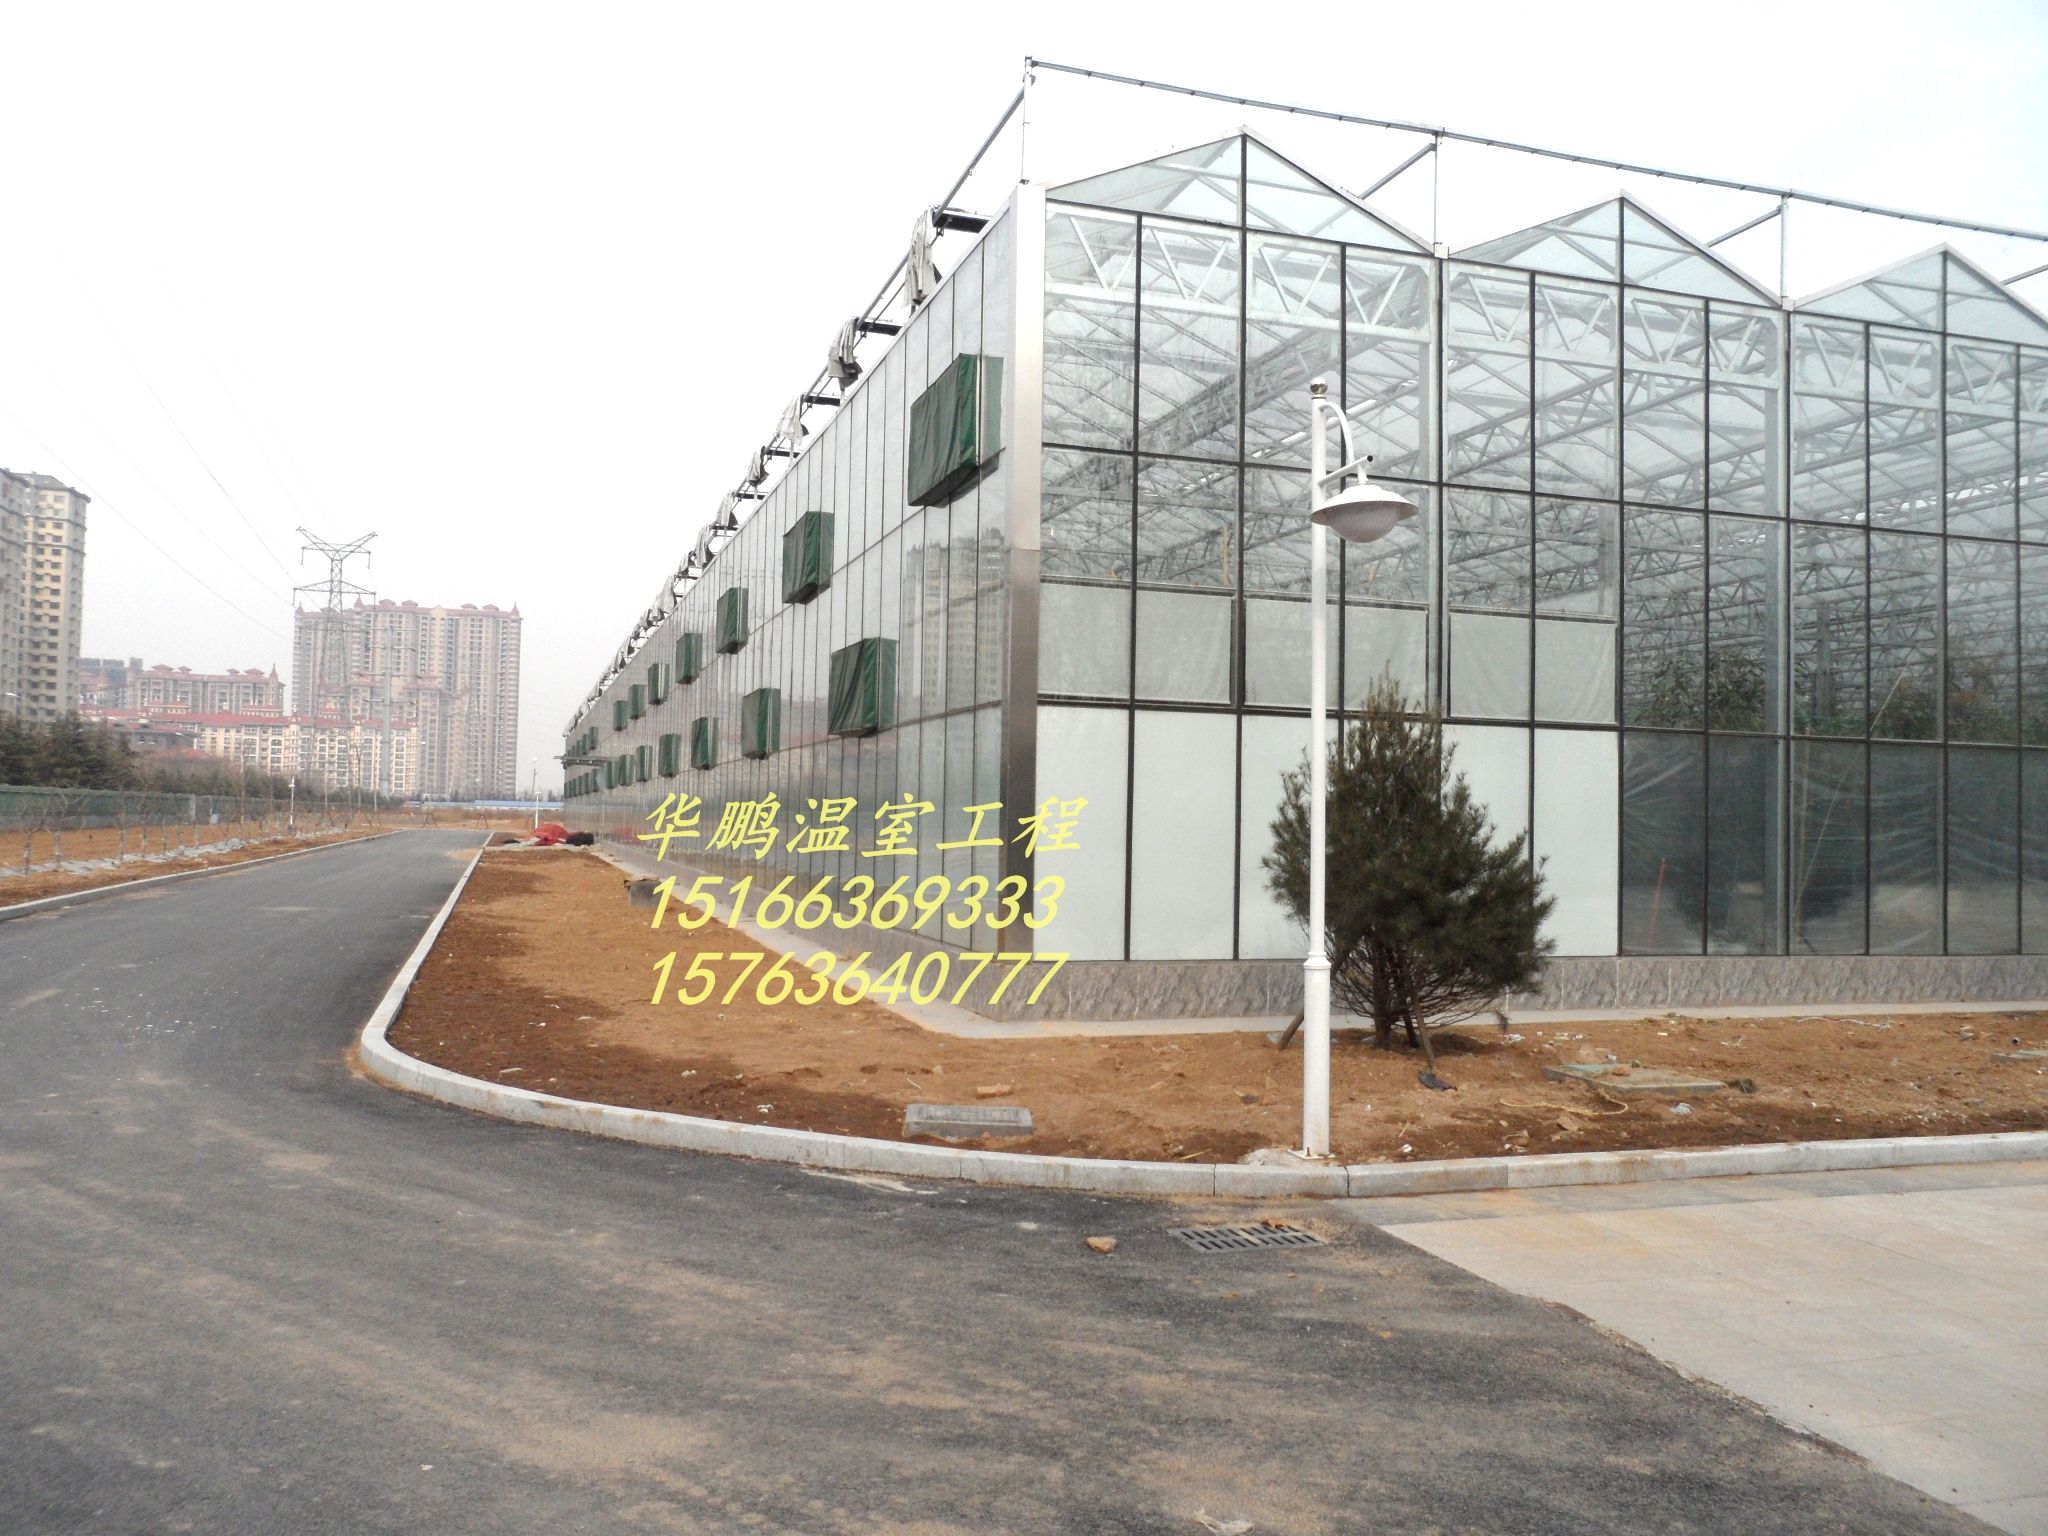 潍坊市玻璃温室、温室大棚建设厂家玻璃温室、温室大棚建设